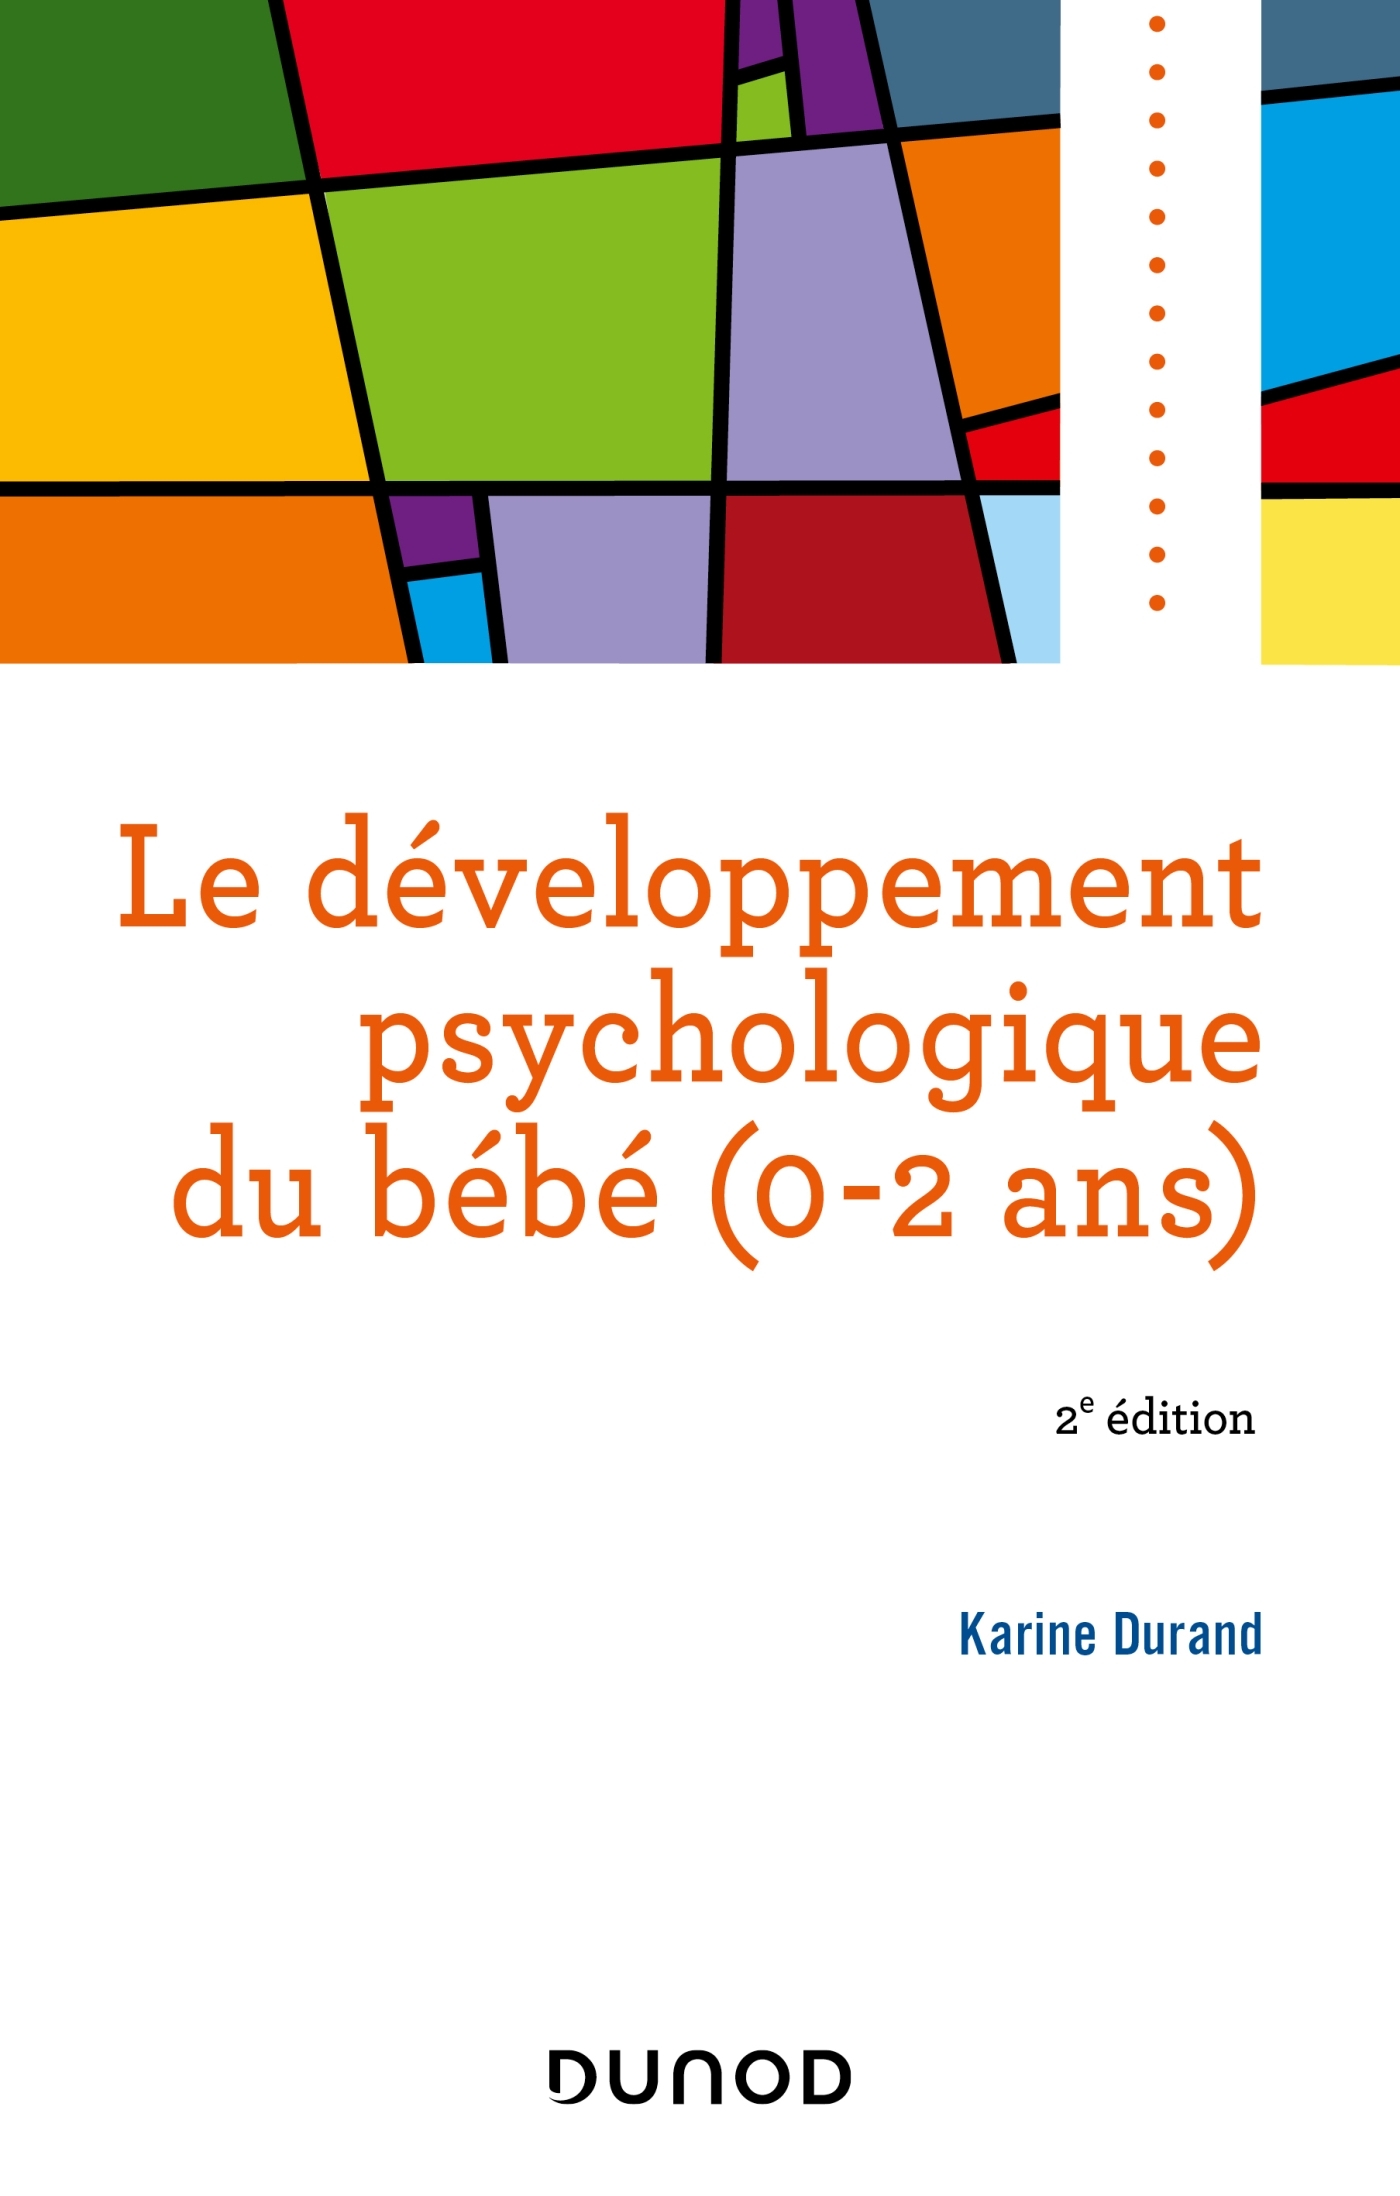 Le développement psychologique du bébé (0-2 ans) - Livre et ebook  Psychologie cognitive et du développement de Karine Durand - Dunod